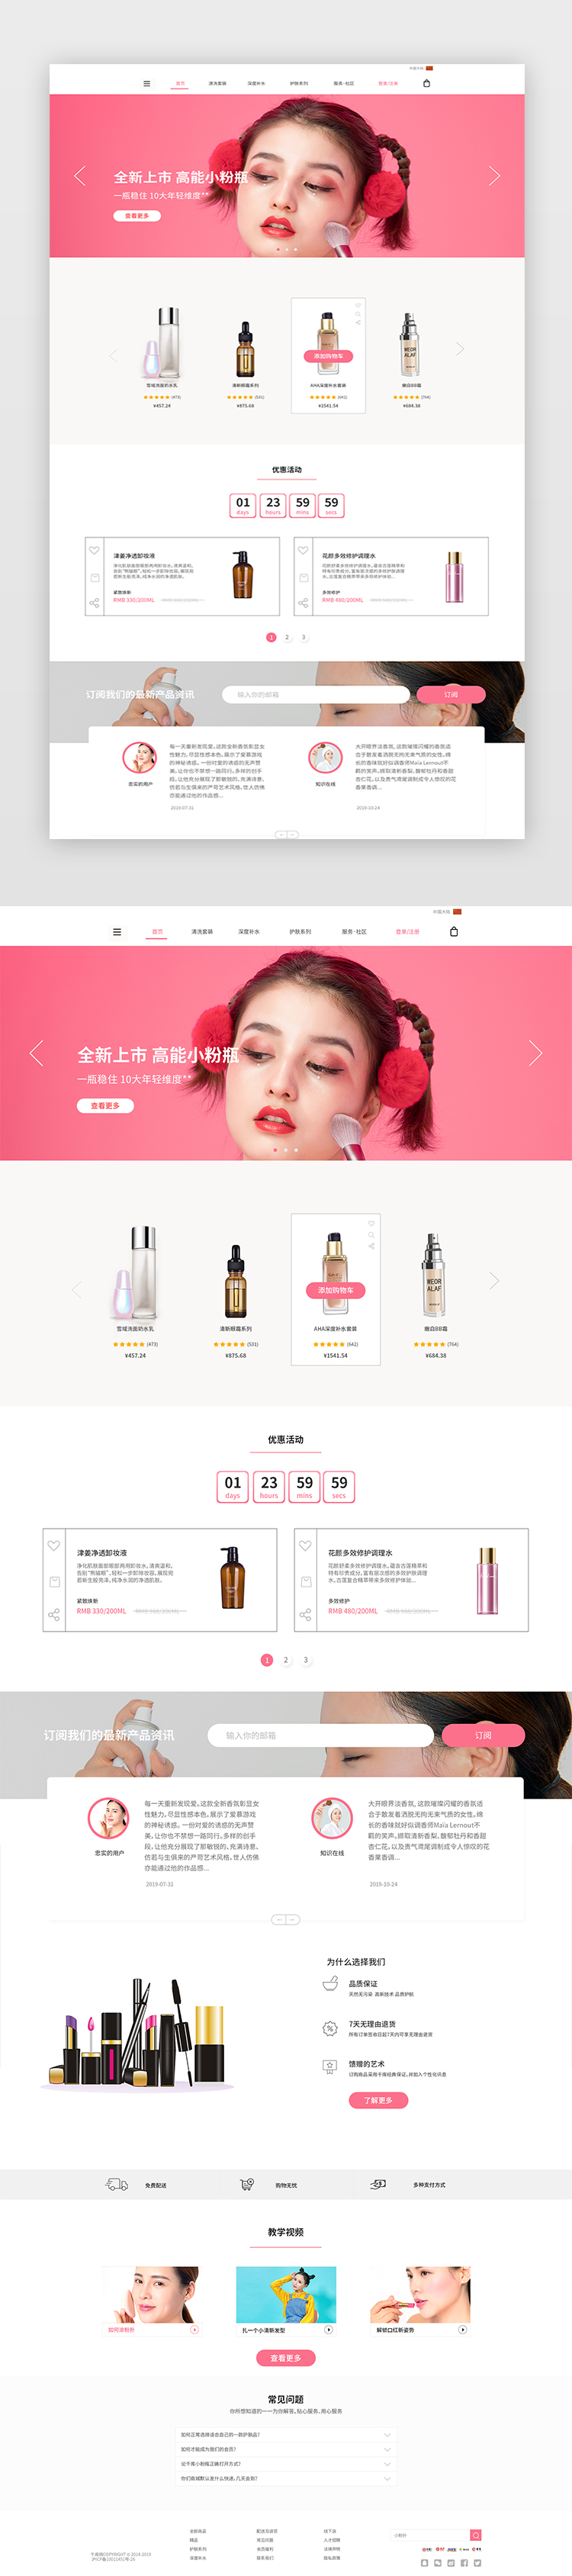 粉红色化妆品商城设计网页图片